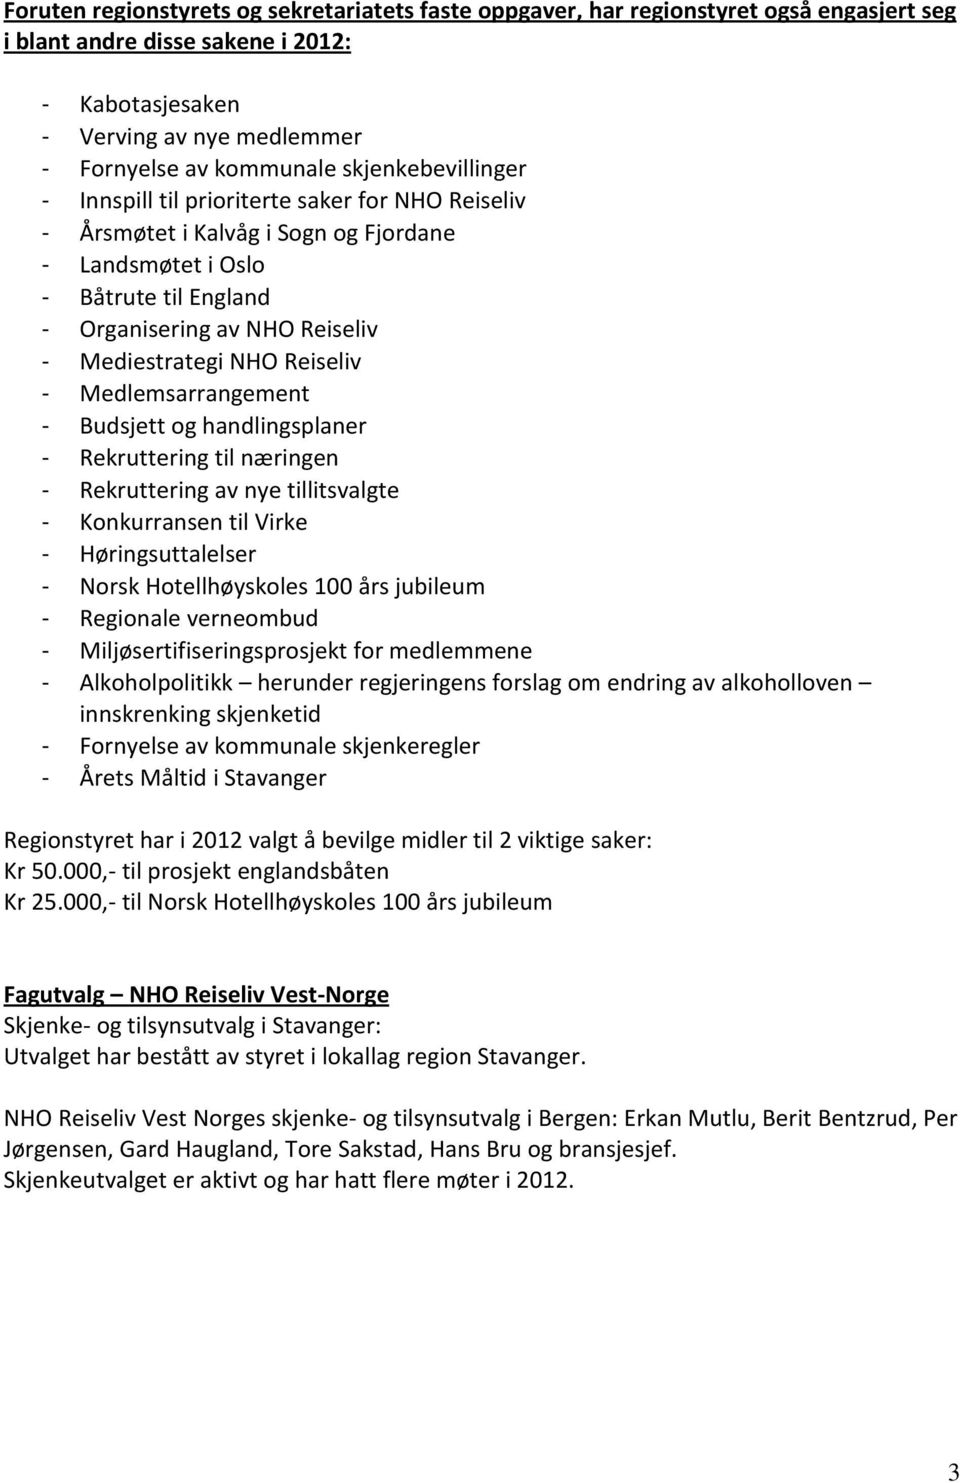 NHO Reiseliv - Medlemsarrangement - Budsjett og handlingsplaner - Rekruttering til næringen - Rekruttering av nye tillitsvalgte - Konkurransen til Virke - Høringsuttalelser - Norsk Hotellhøyskoles